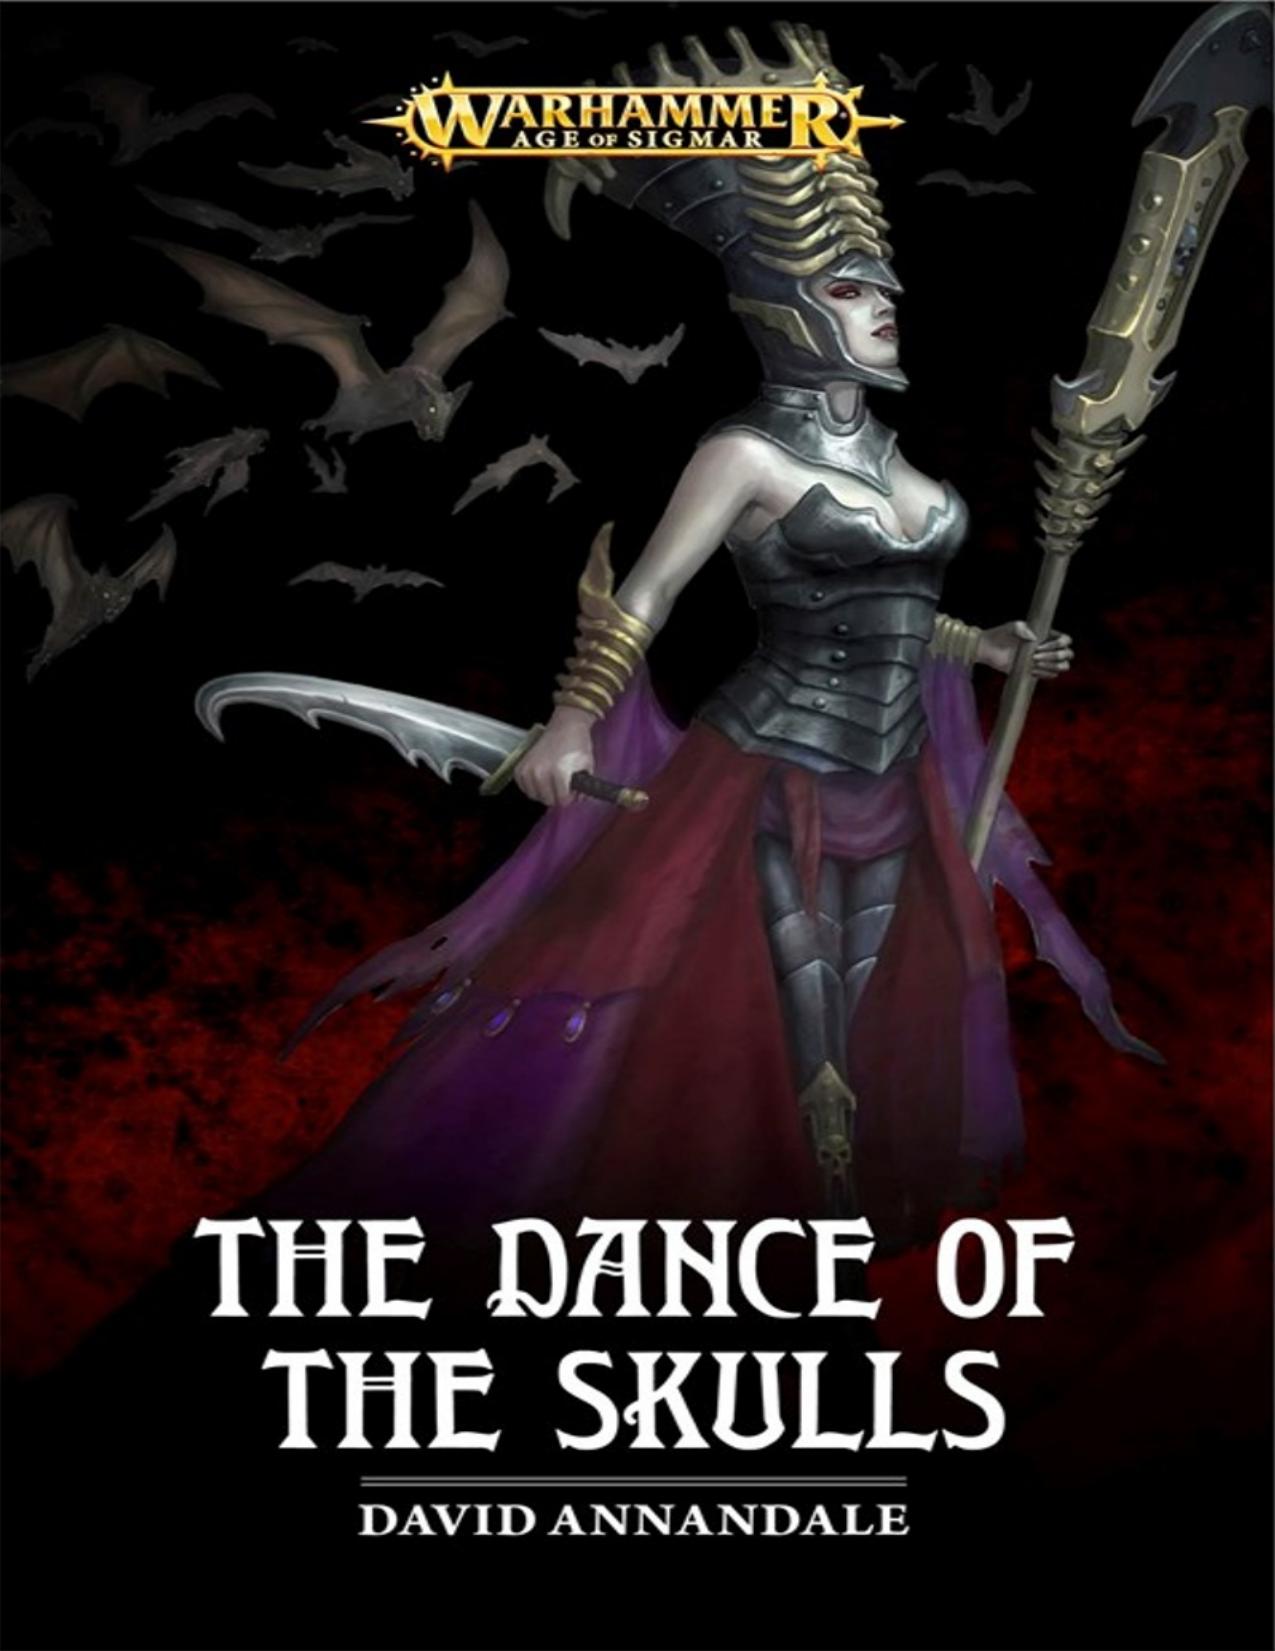 The Dance of Skulls